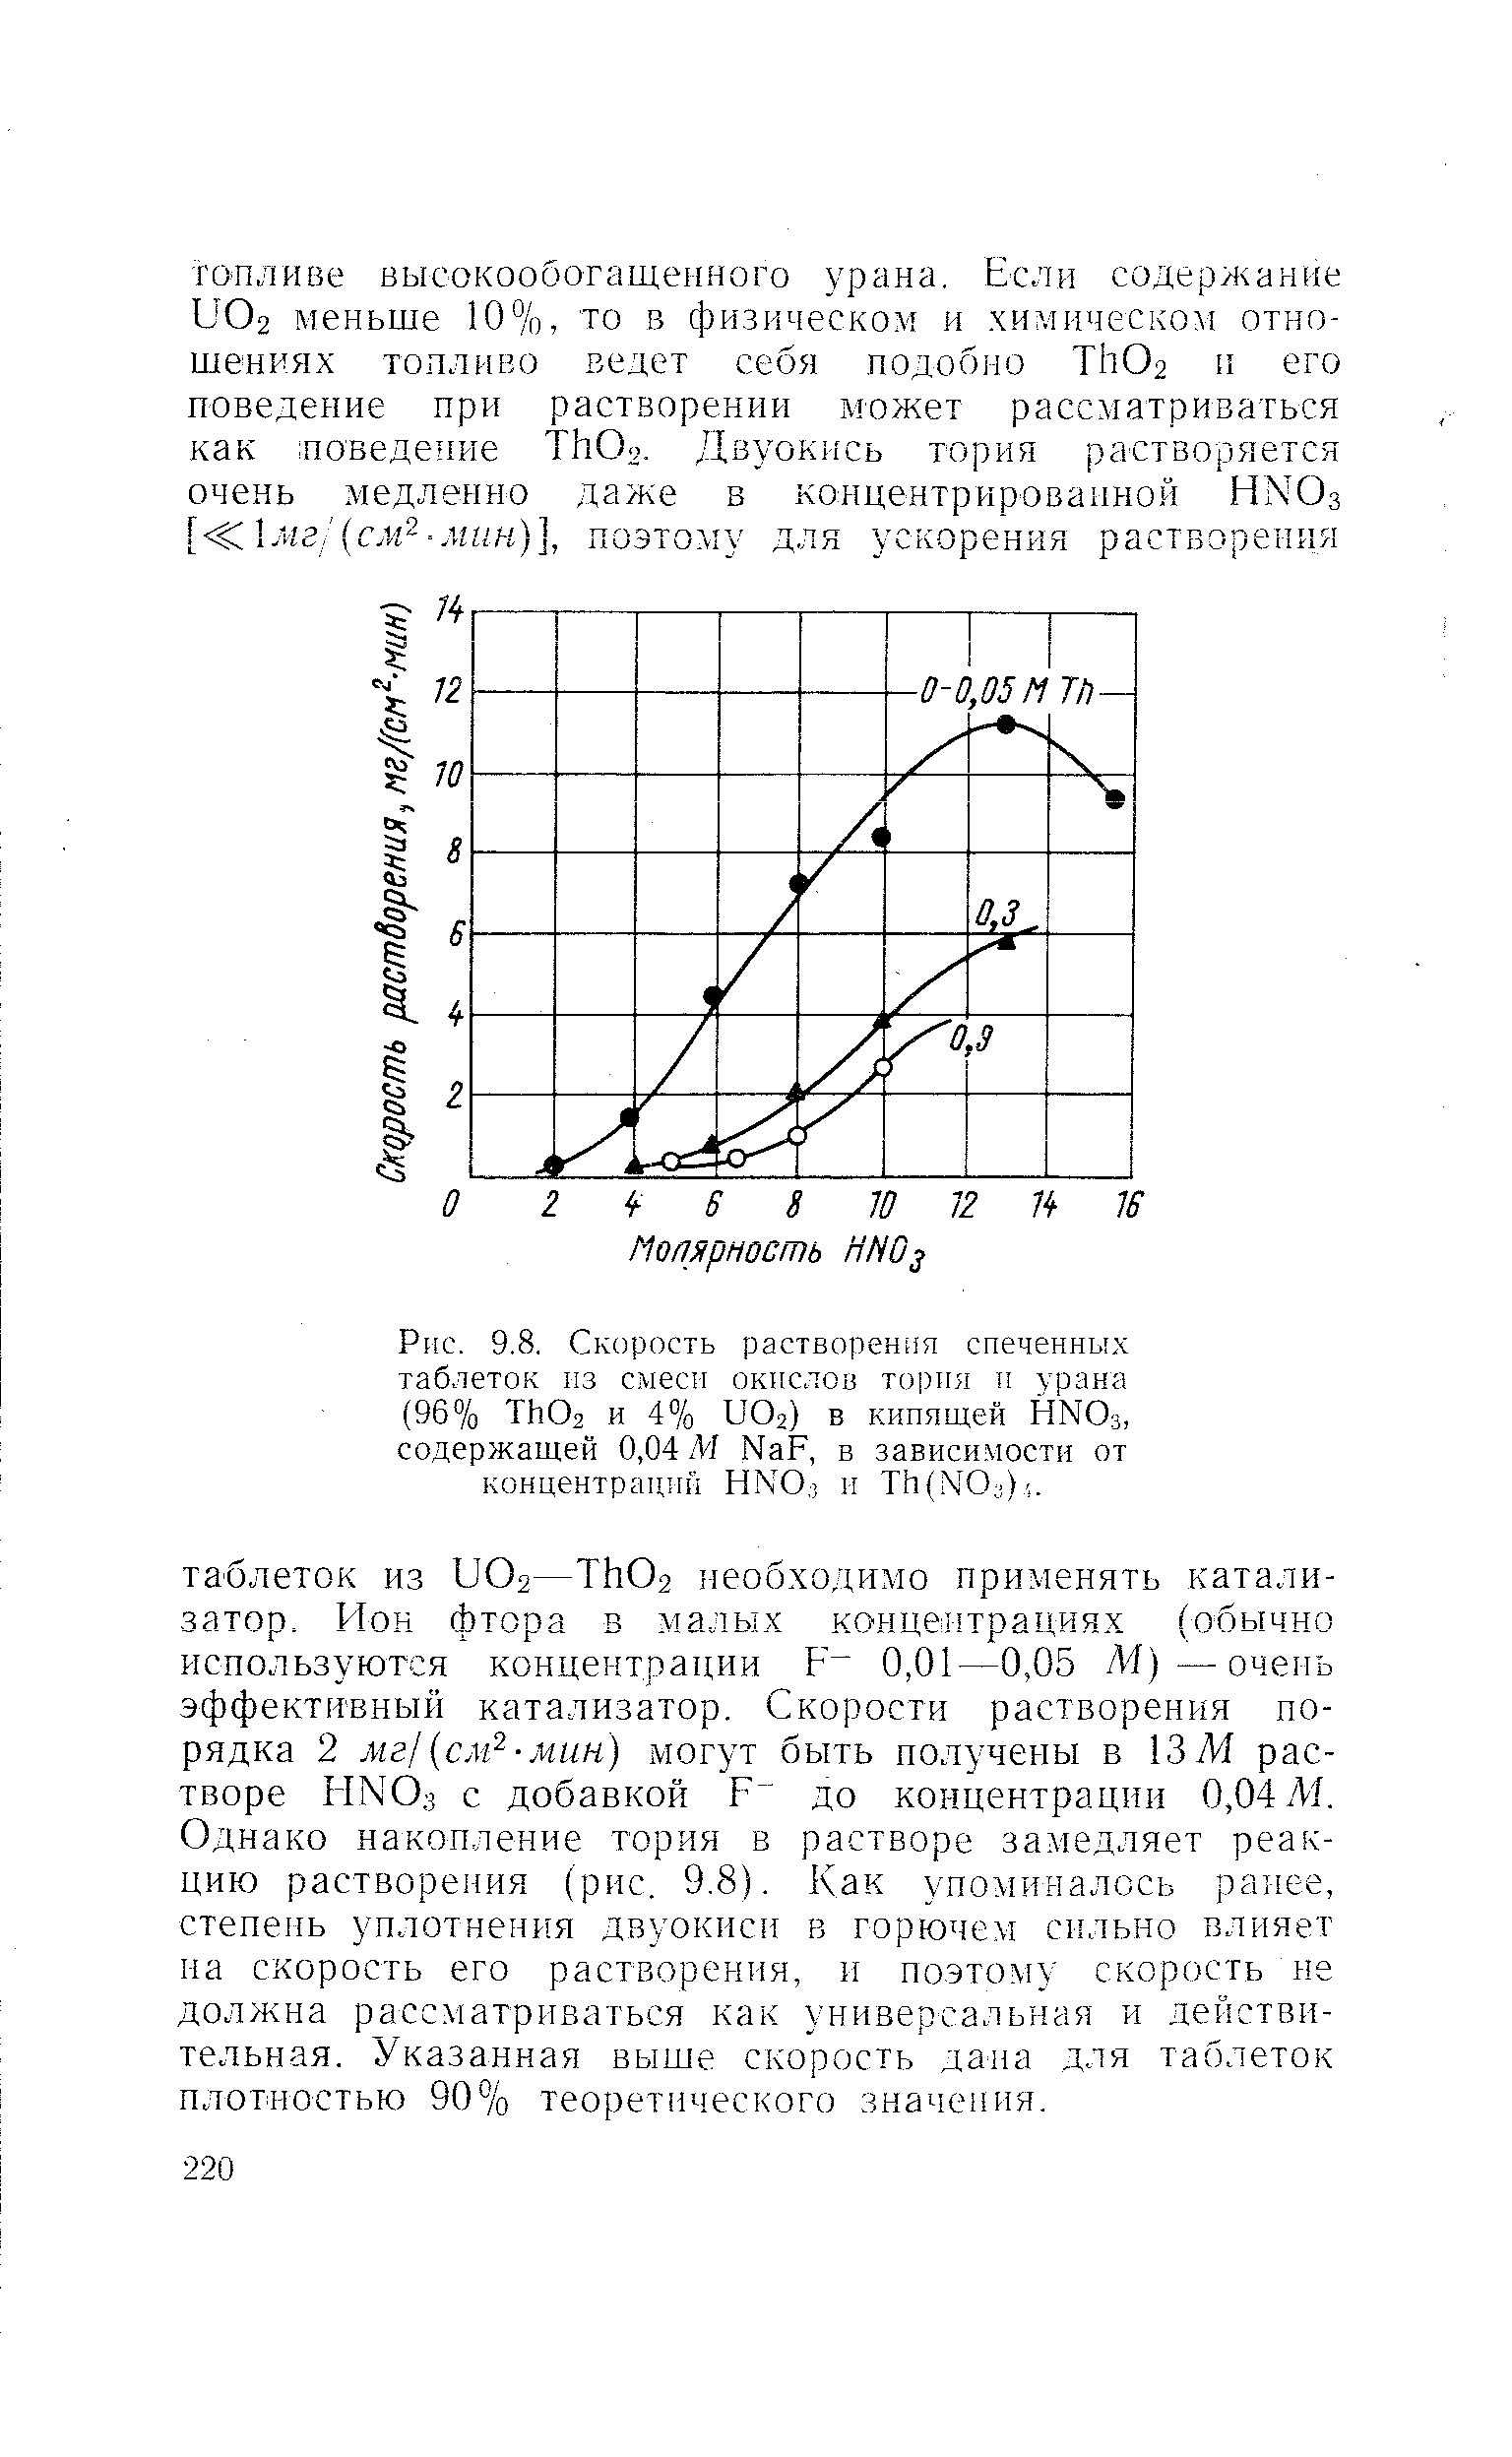 Скорость растворения спеченных таблеток пз смеси окислов торпя и урана (96% ТЬОз и 4% иОг) в кипящей HNO3, содержащей 0,04 М NaF, в зависимости от концентрации HNO.j и Th(NO )-,.